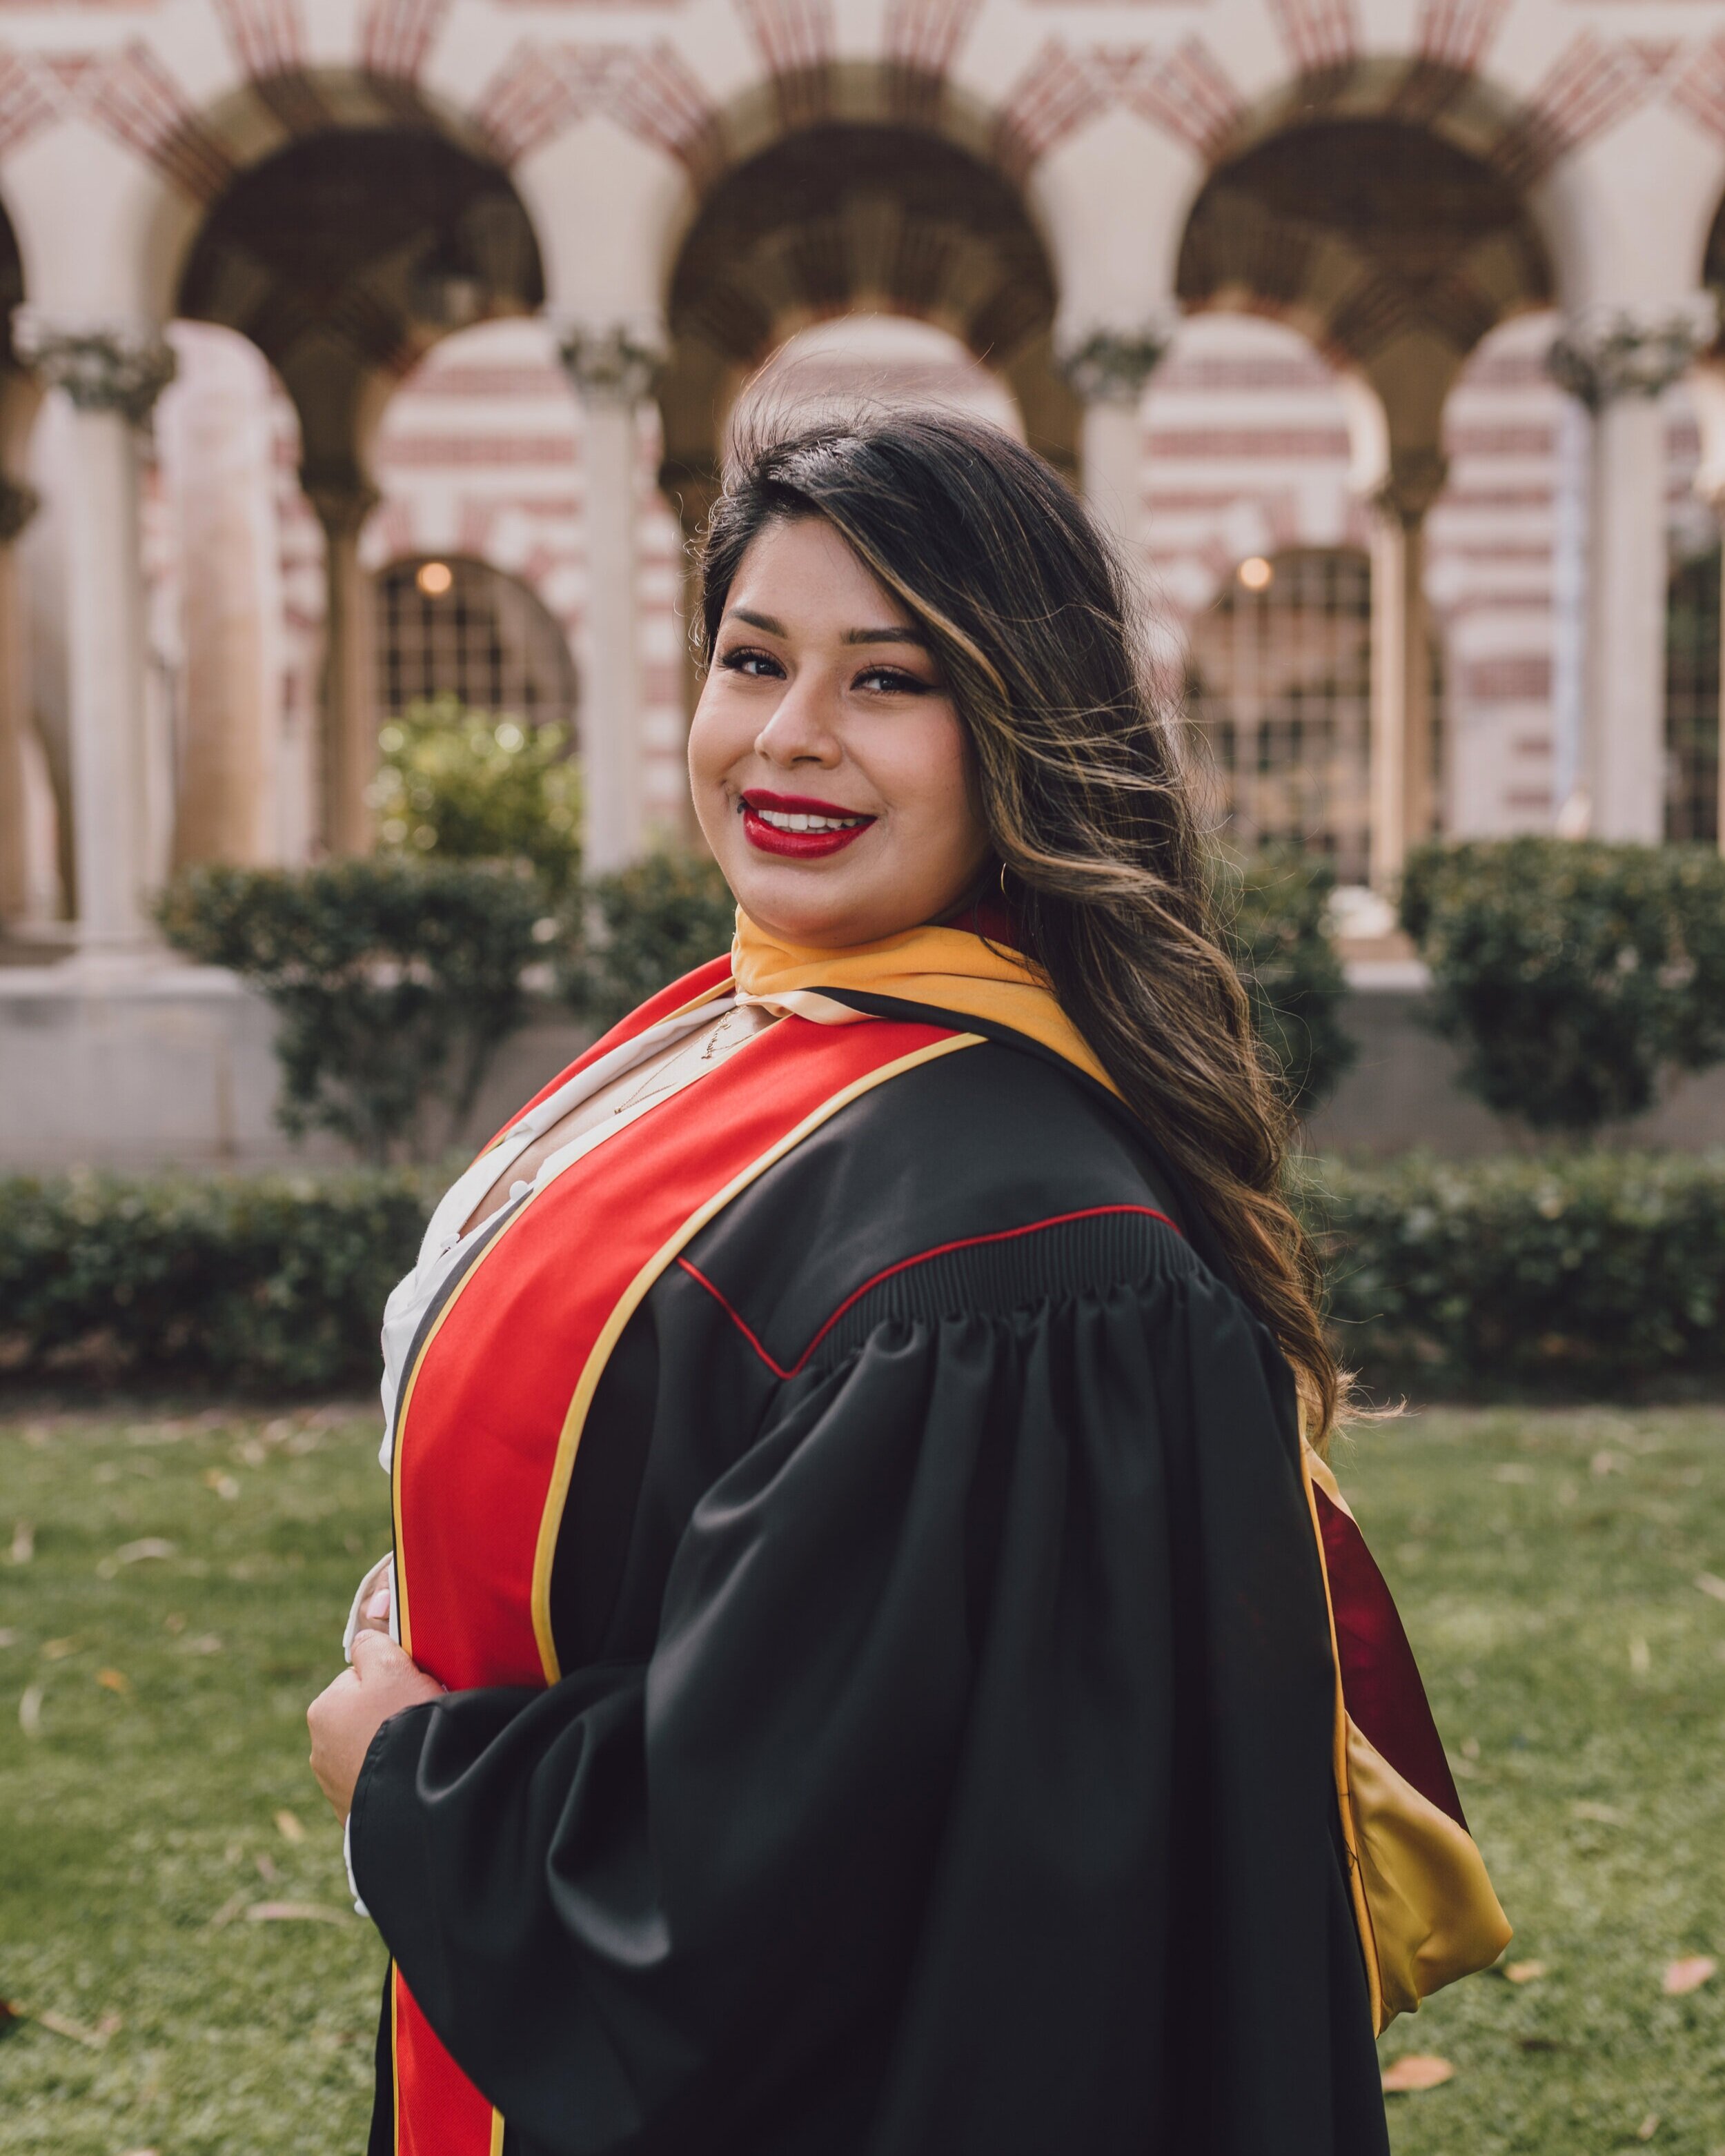 LosAngeles-Graduation-Portrait-Photographer-USC-4.jpg